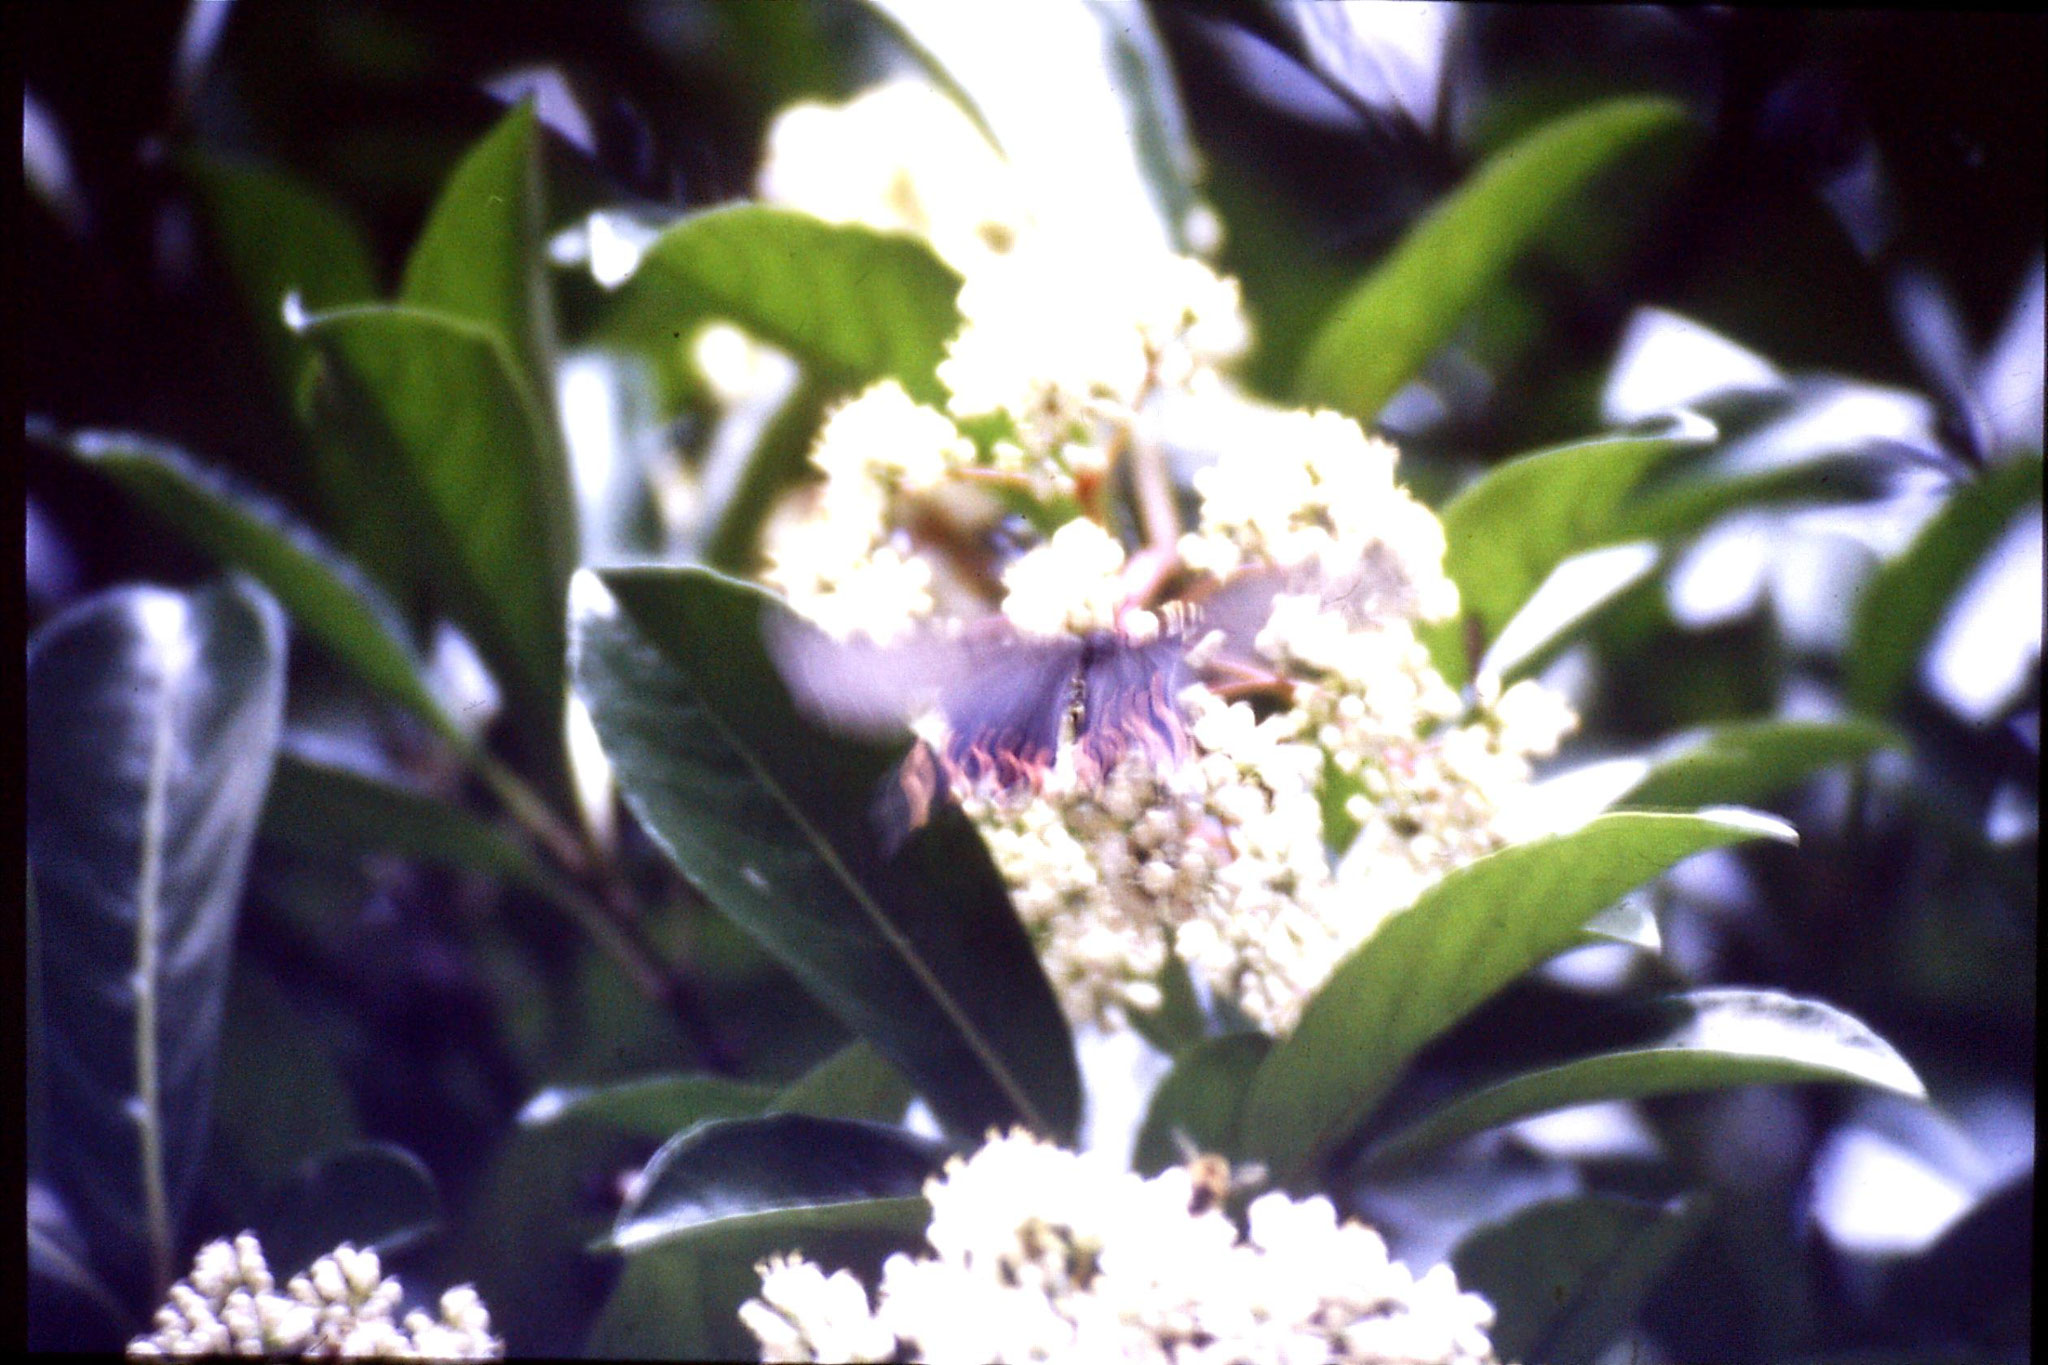 8/6/1989: 14: Hangzhou, black butterfly with orange spots